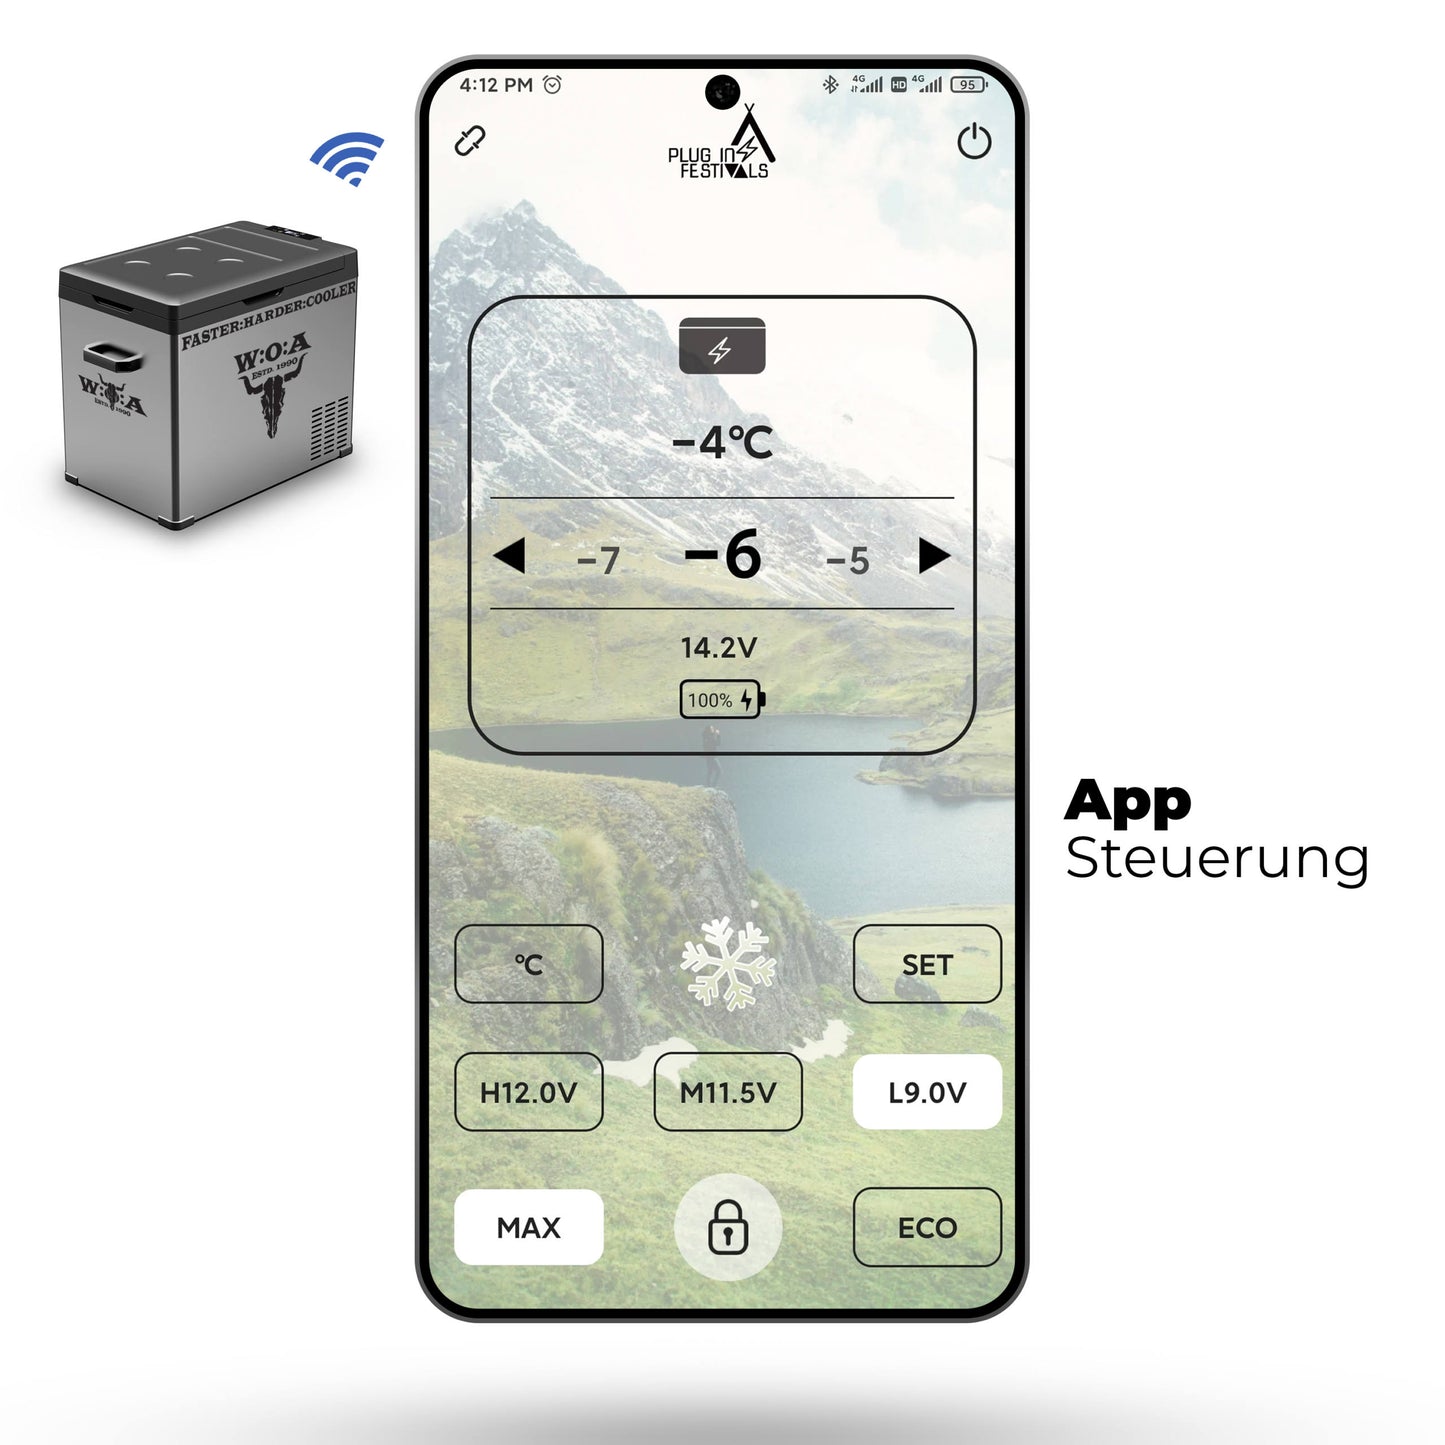 IceCube plug-in festivalcompressorkoeler met app-bediening